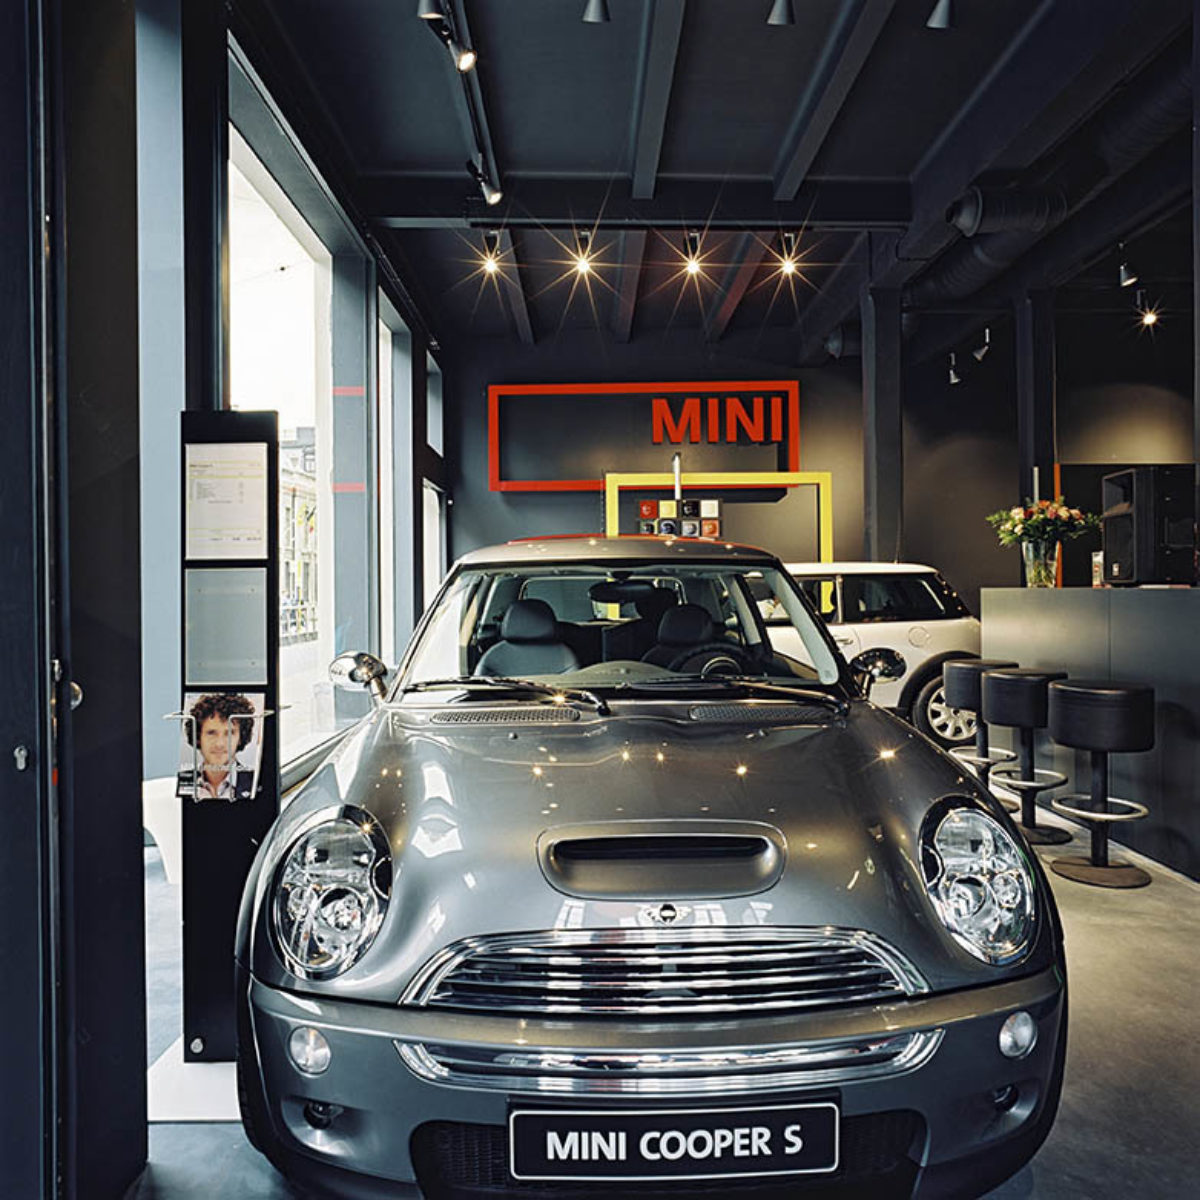 Mini Cooper - Antwerpen - c-Kris Vandamme - 03